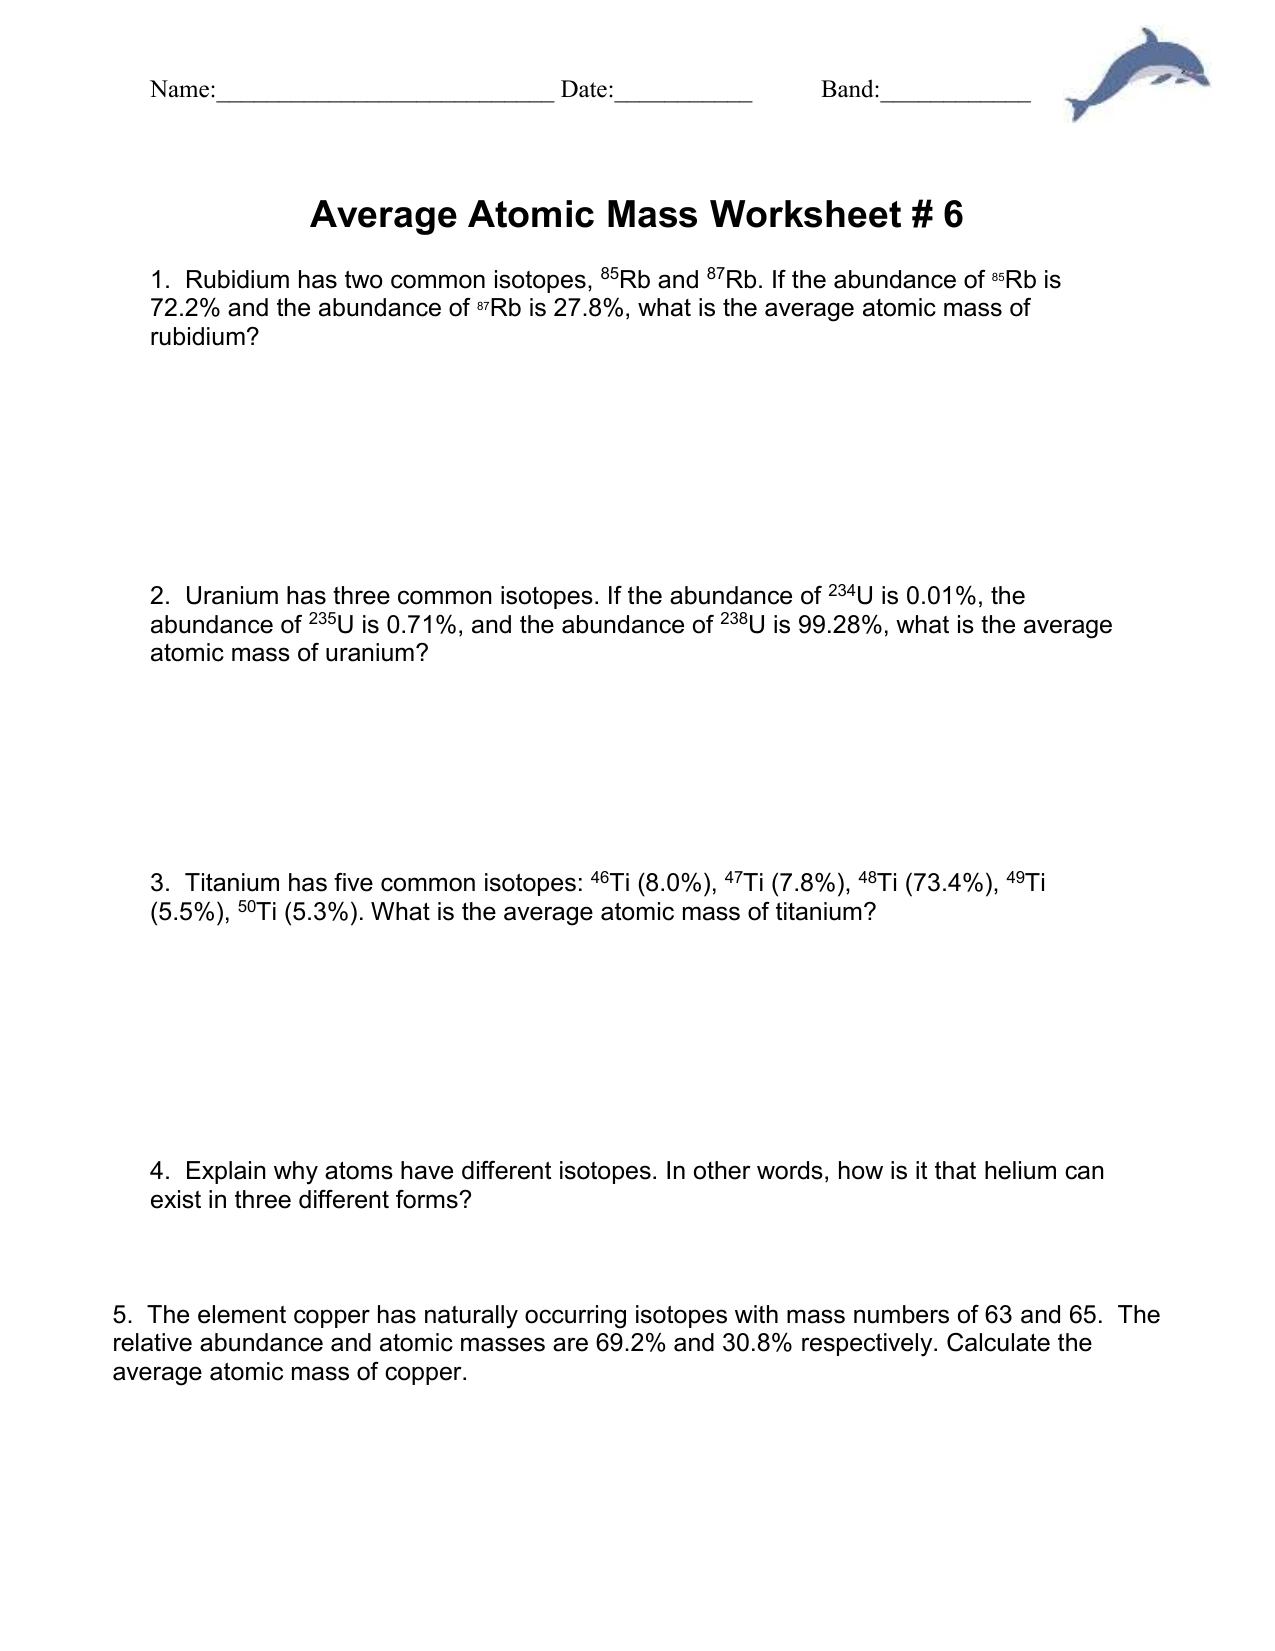 Ch 11 Average atomic mass worksheet Throughout Calculating Average Atomic Mass Worksheet